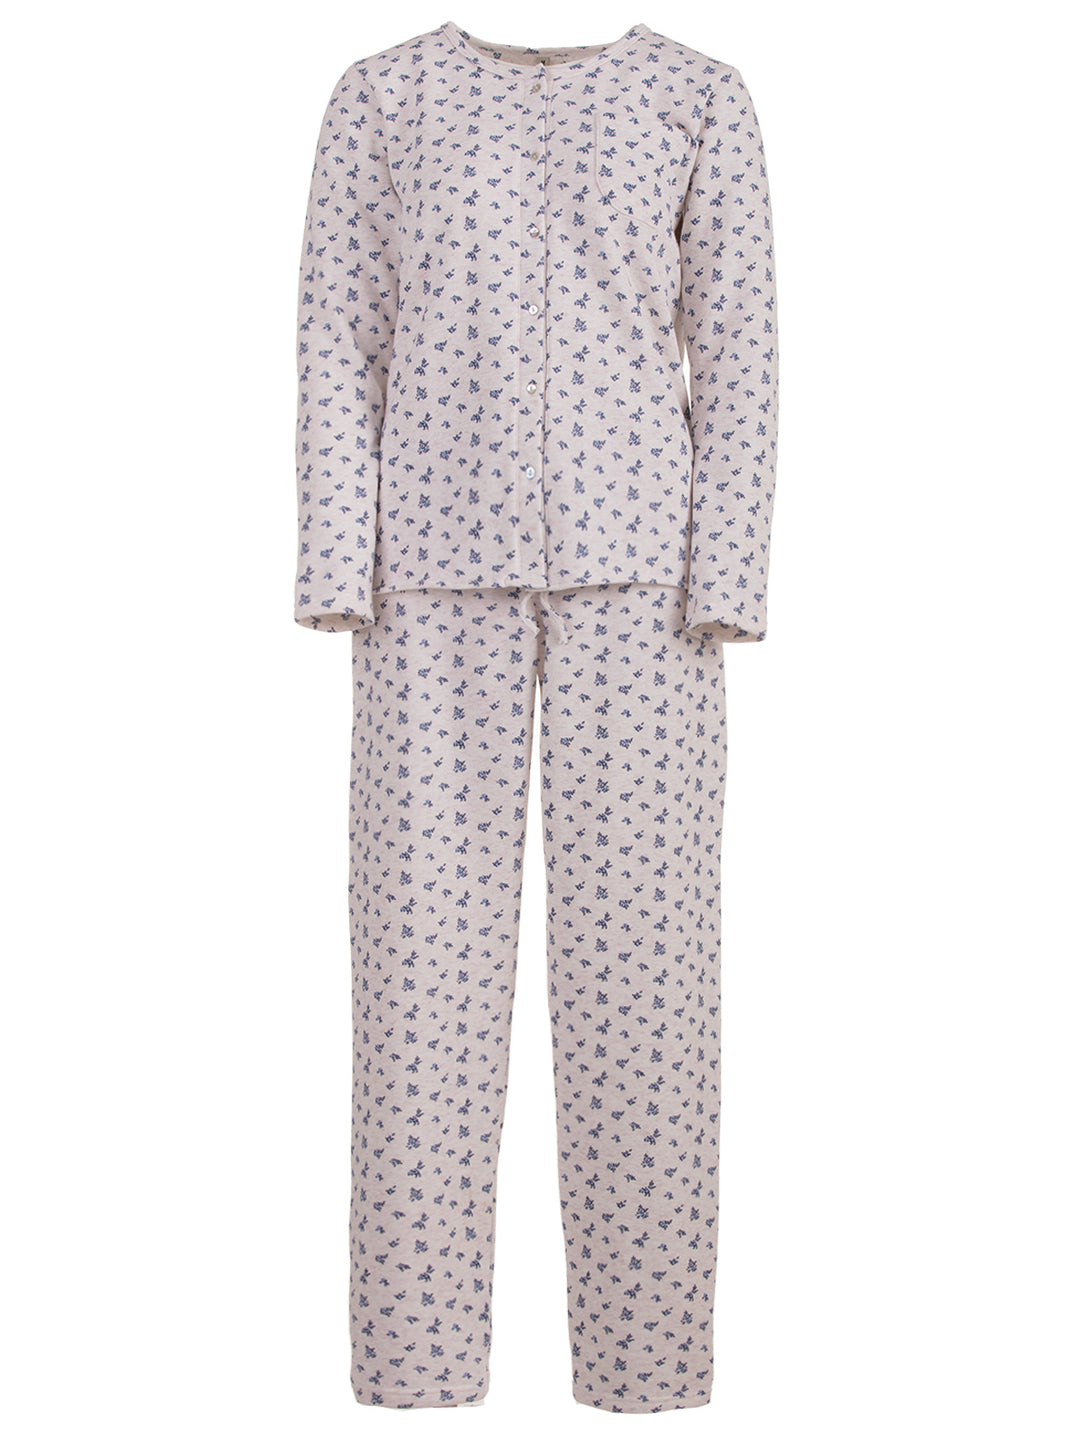 Pajama set thermal - flowers blue